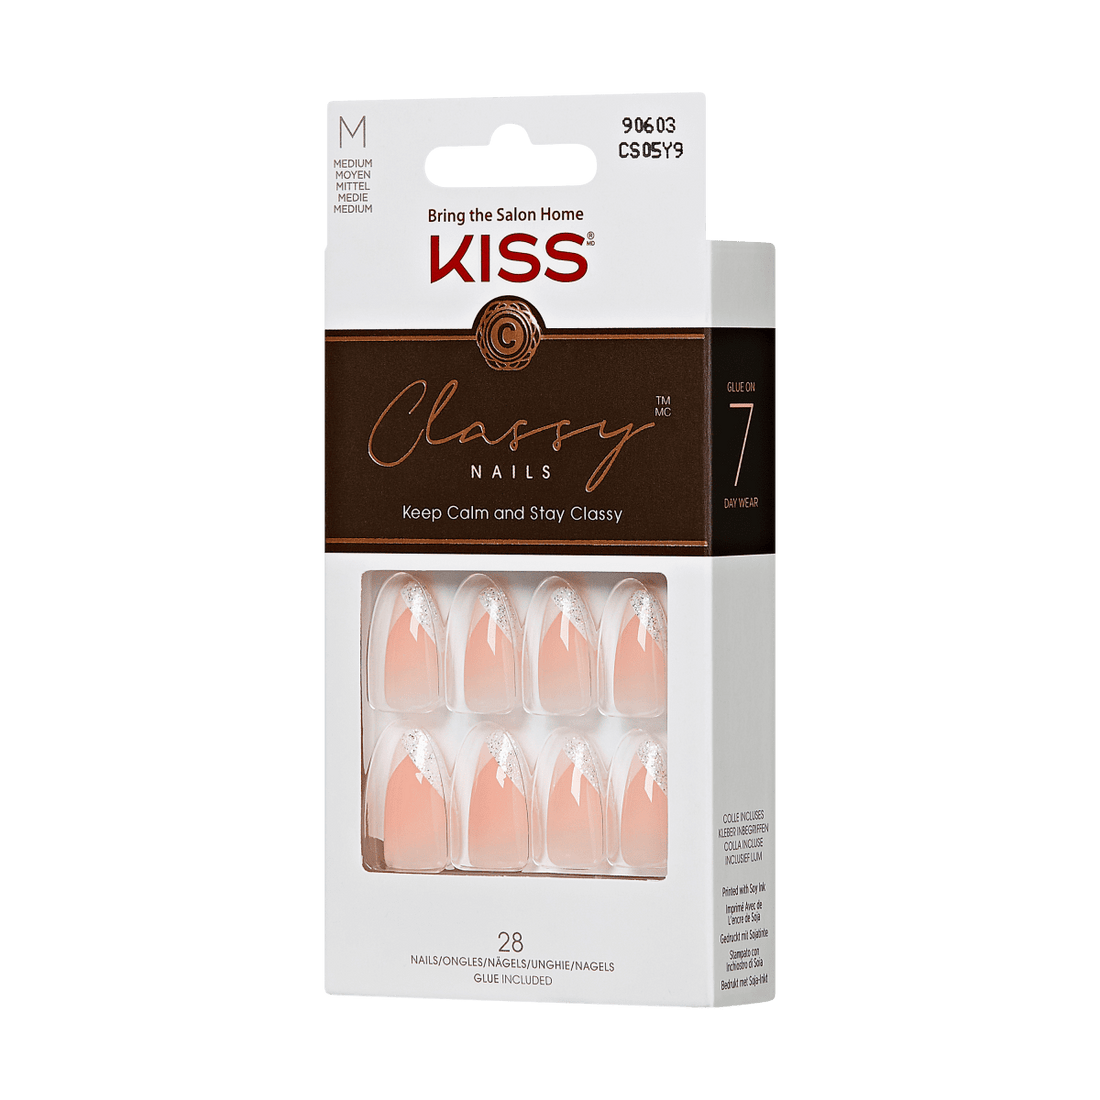 KISS Classy Nails - Dreaming